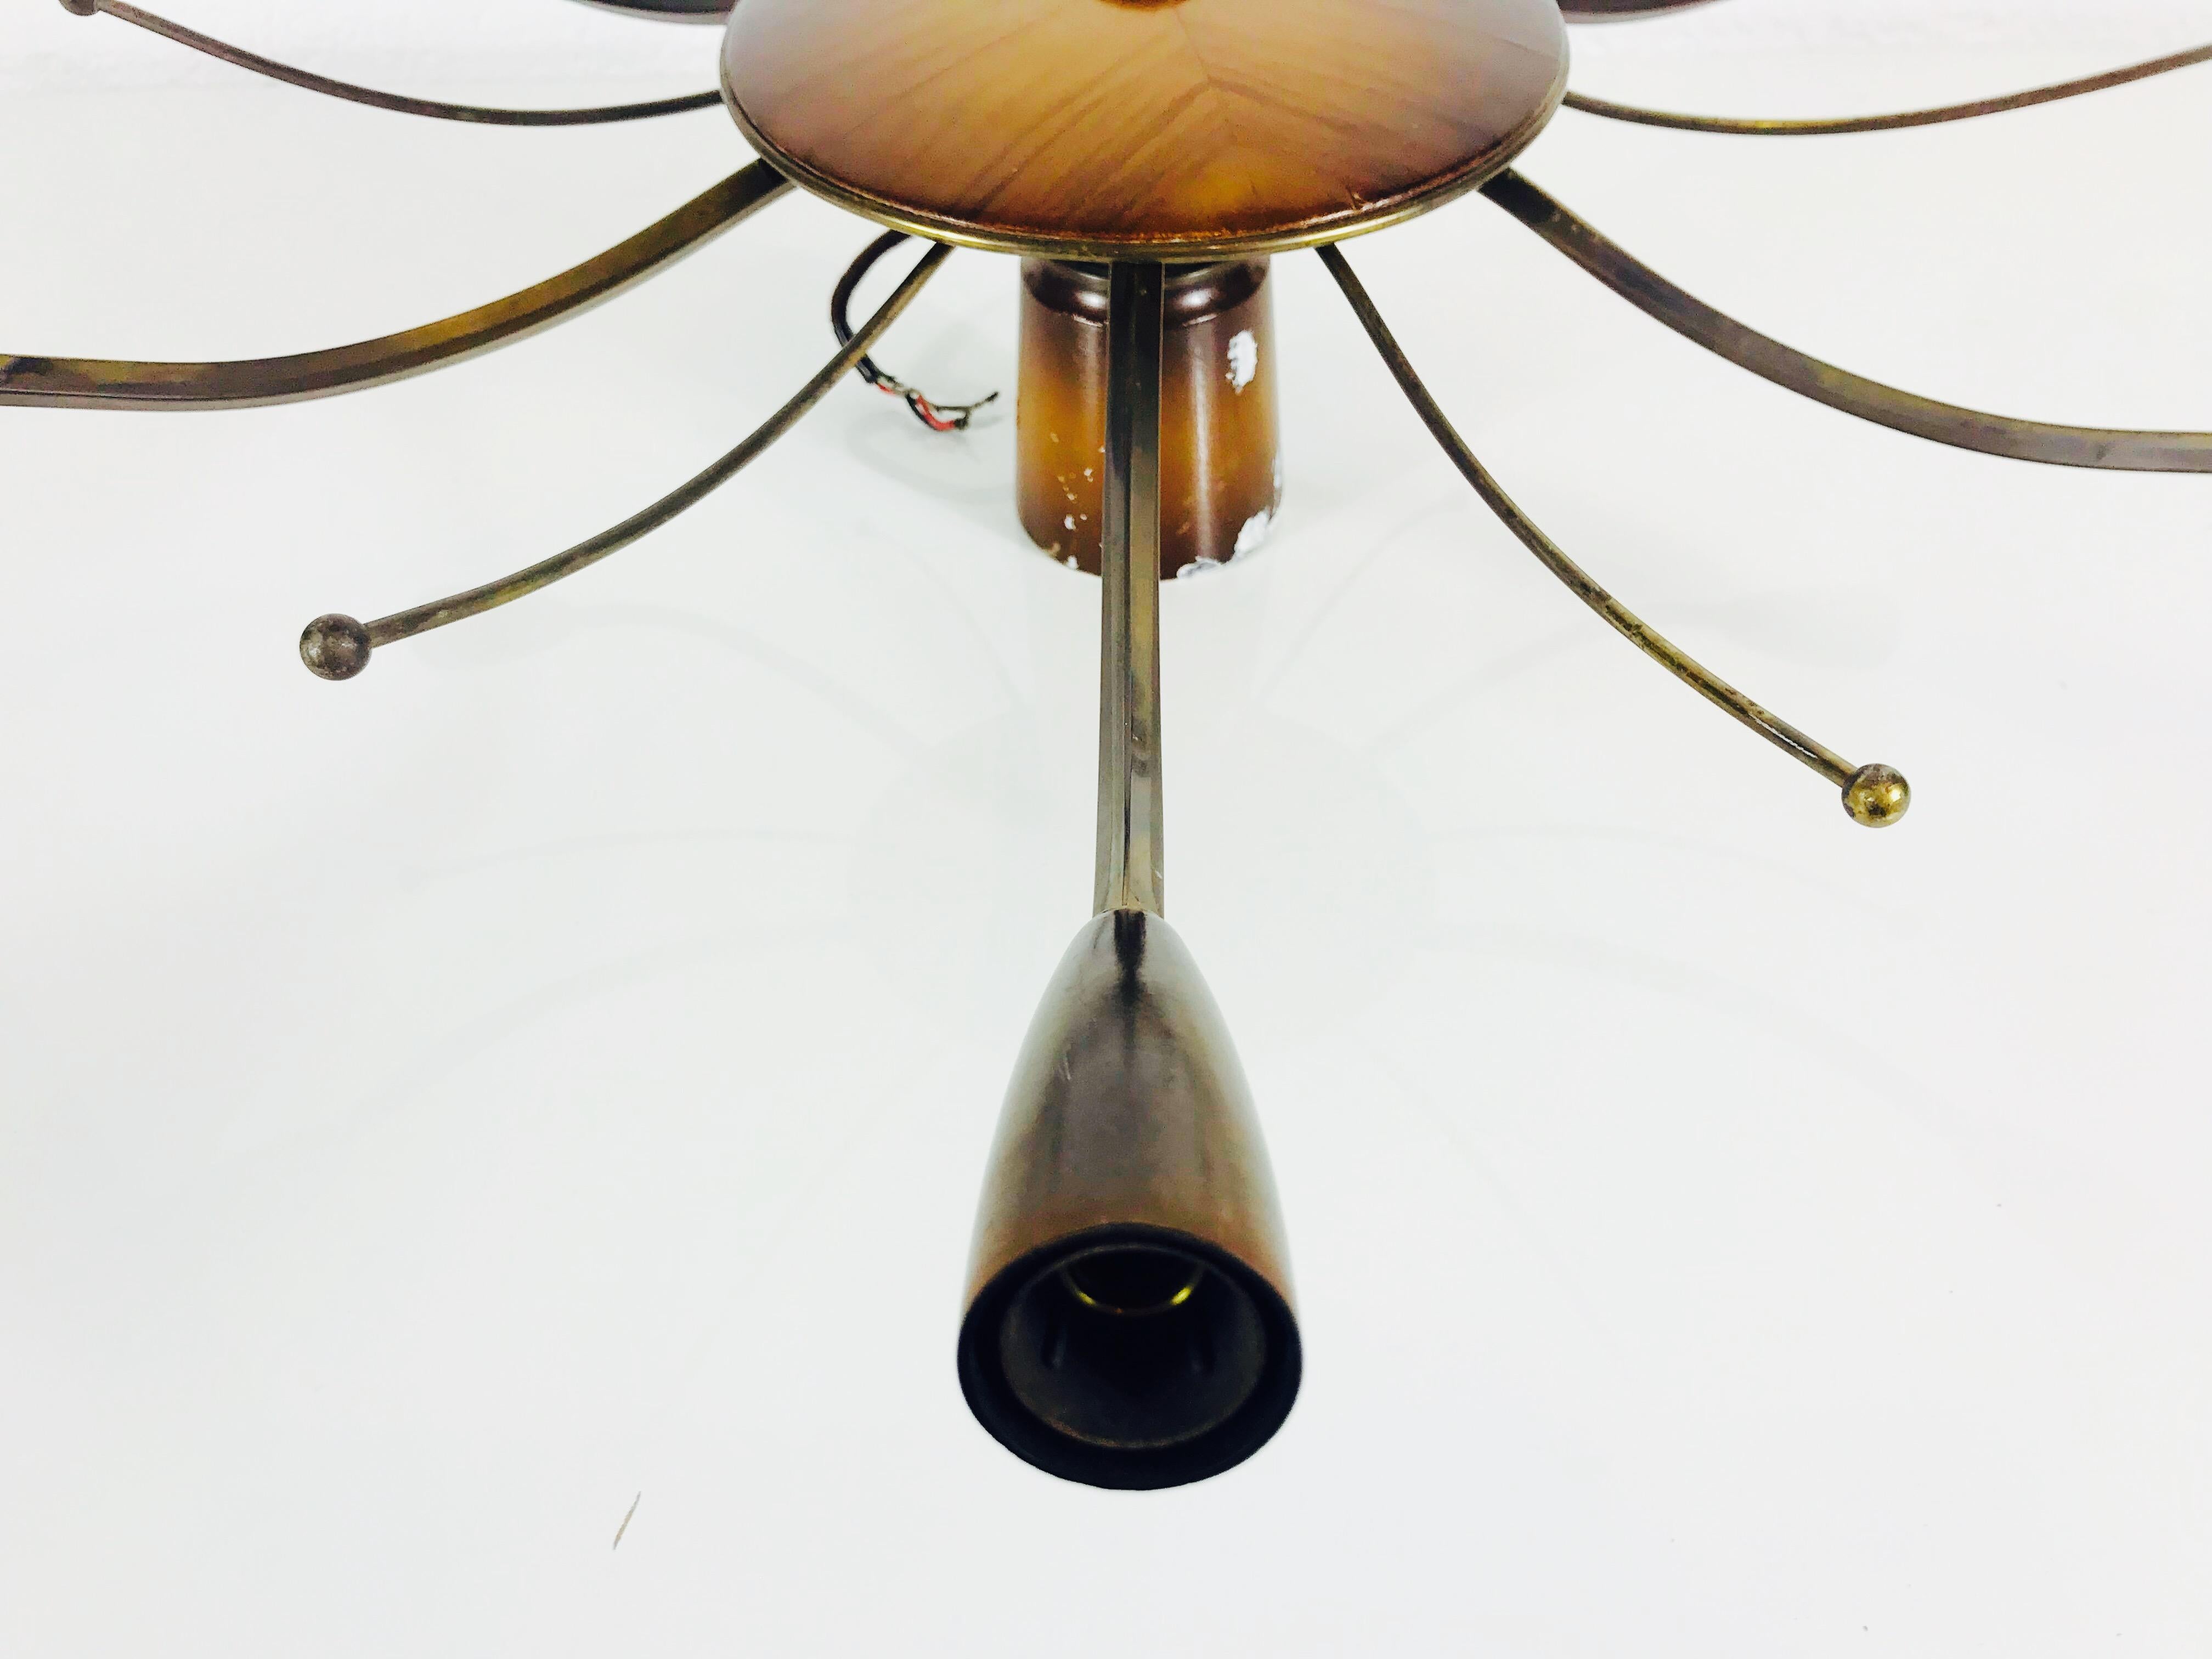 Ein Sputnik-Kronleuchter, hergestellt in Deutschland in den 1950er Jahren. Sie fasziniert mit ihren sechs Messingarmen, in denen jeweils eine E14-Glühbirne sitzt. Außerdem sechs weitere Messingarme ohne Glühbirnen. Das Design und die Form der Lampe